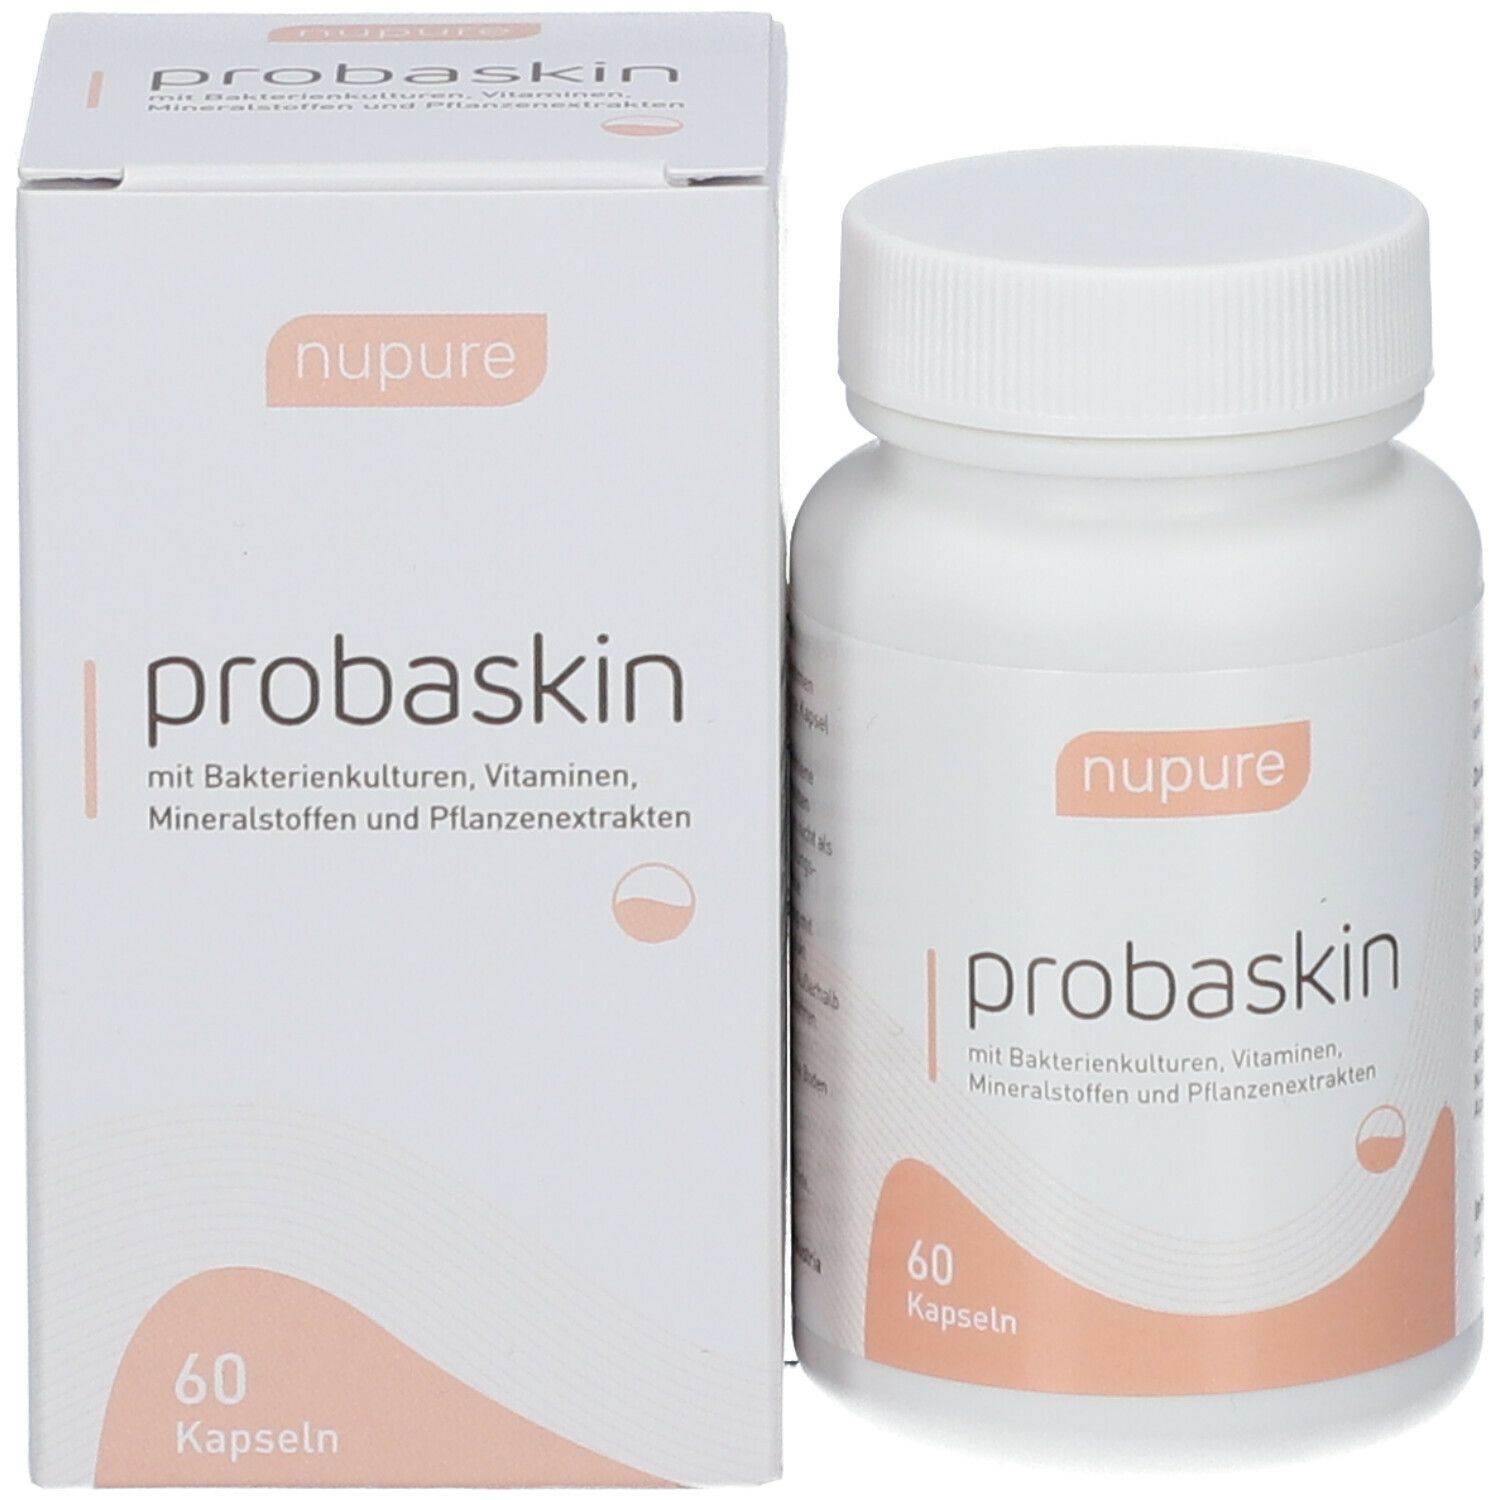 nupure probaskin - für einen gesunden Darm und strahlende Haut